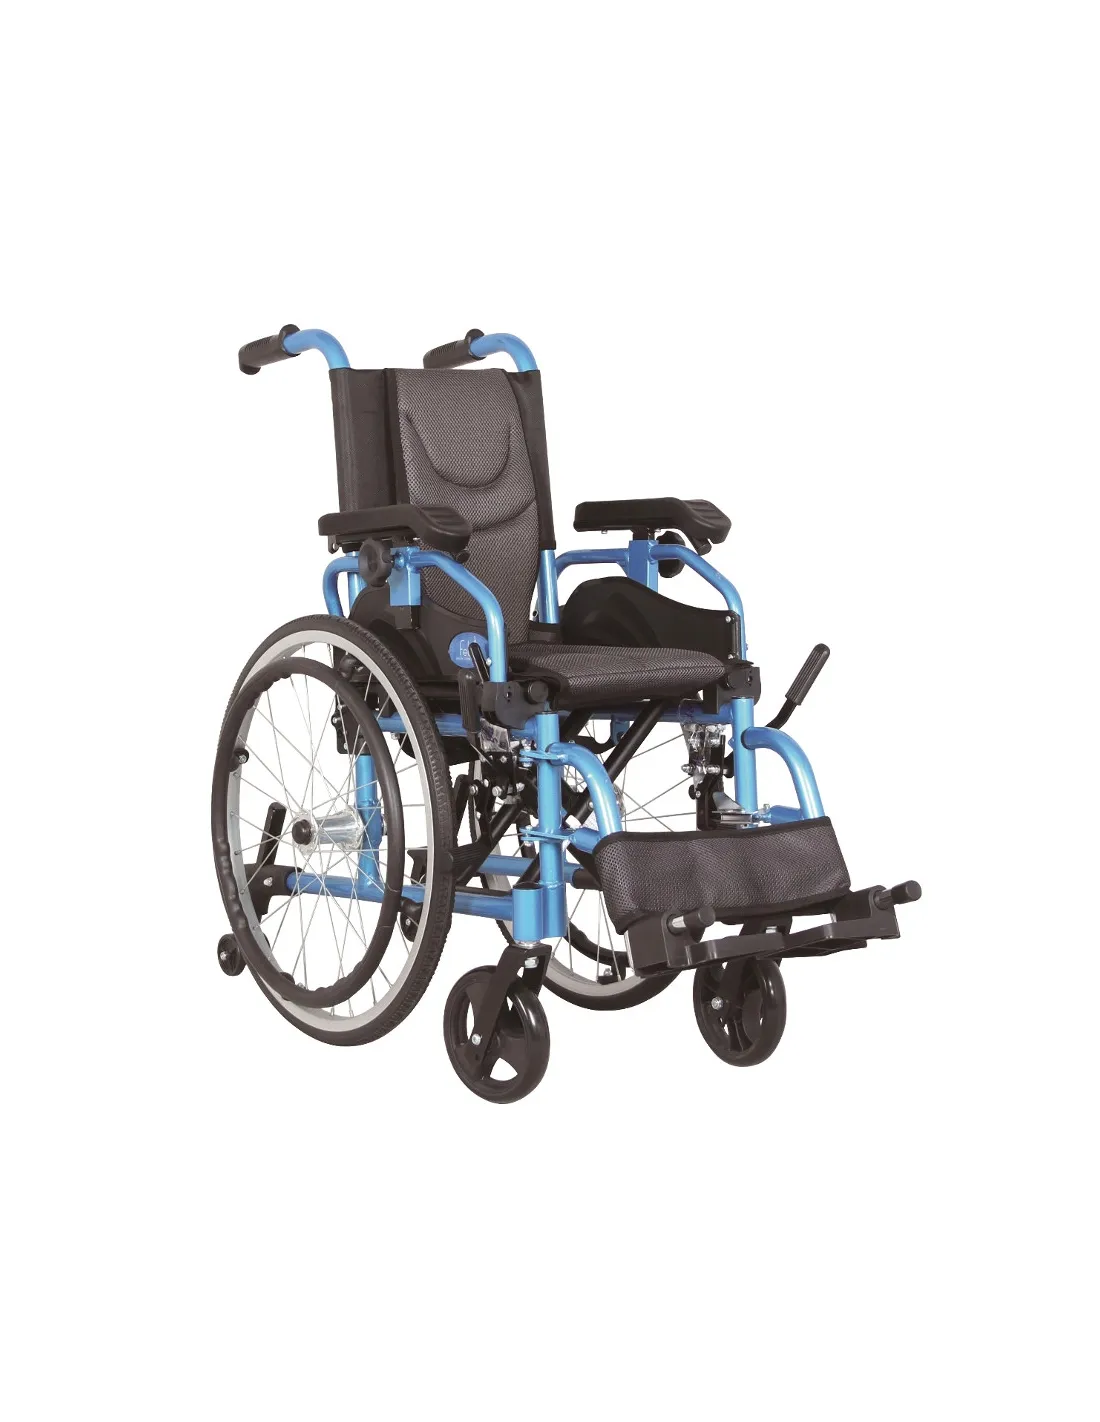 Mesita auxiliar para silla de ruedas o cama articulada - Ortopedia Plaza